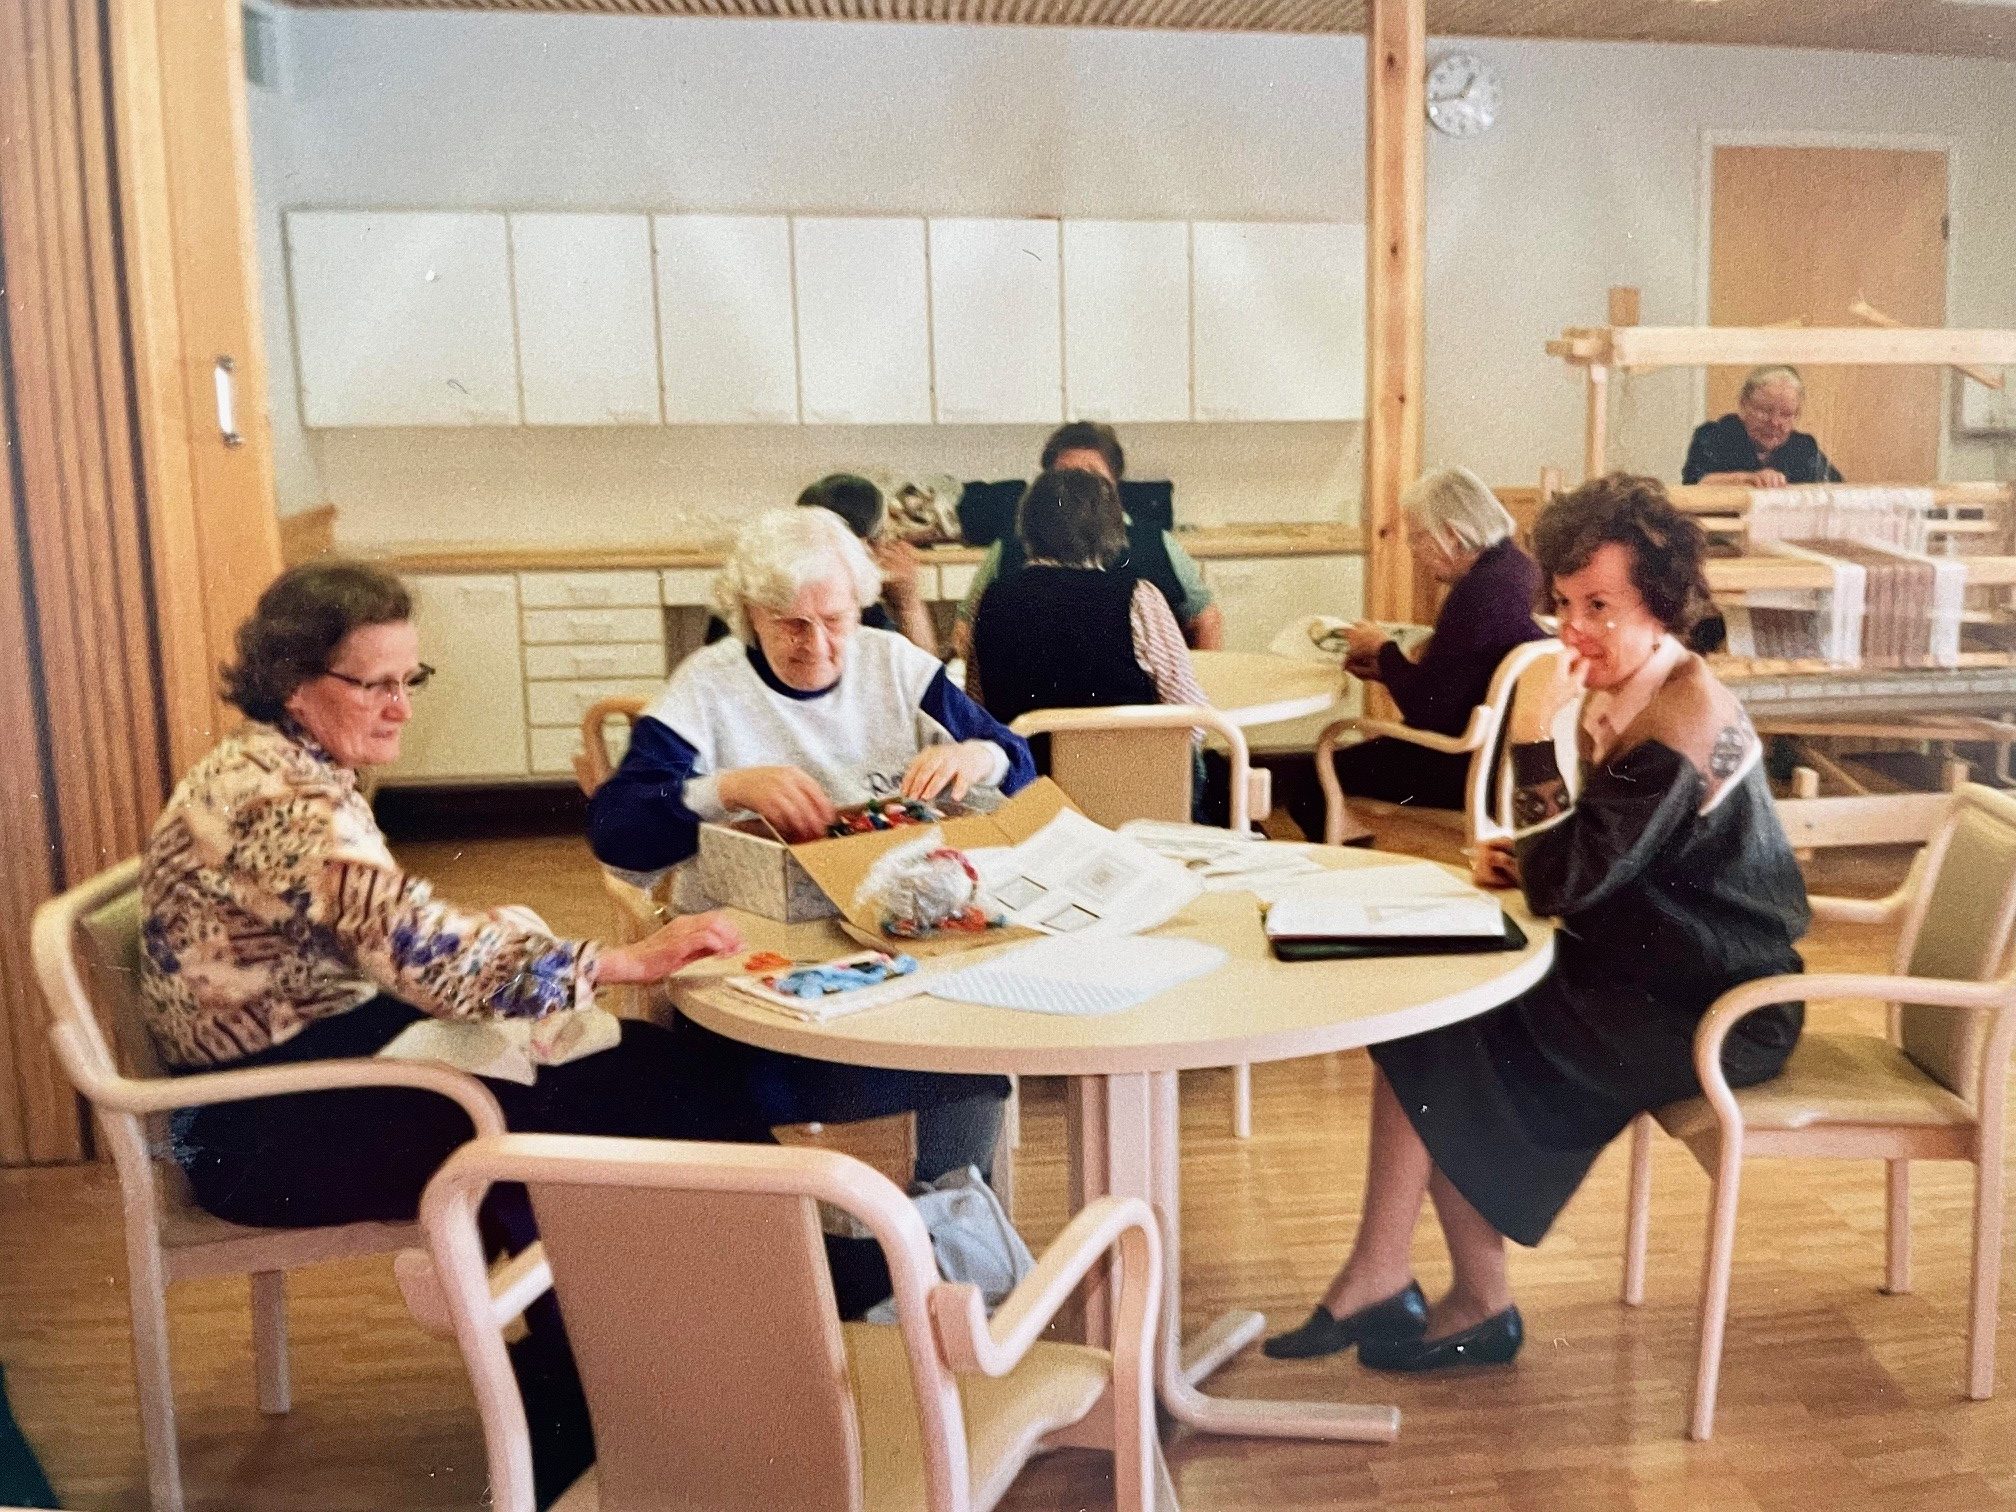 Ryhmä naisia istuu kahden pyöreän pöydän ympärillä tekemässä käsitöitä.